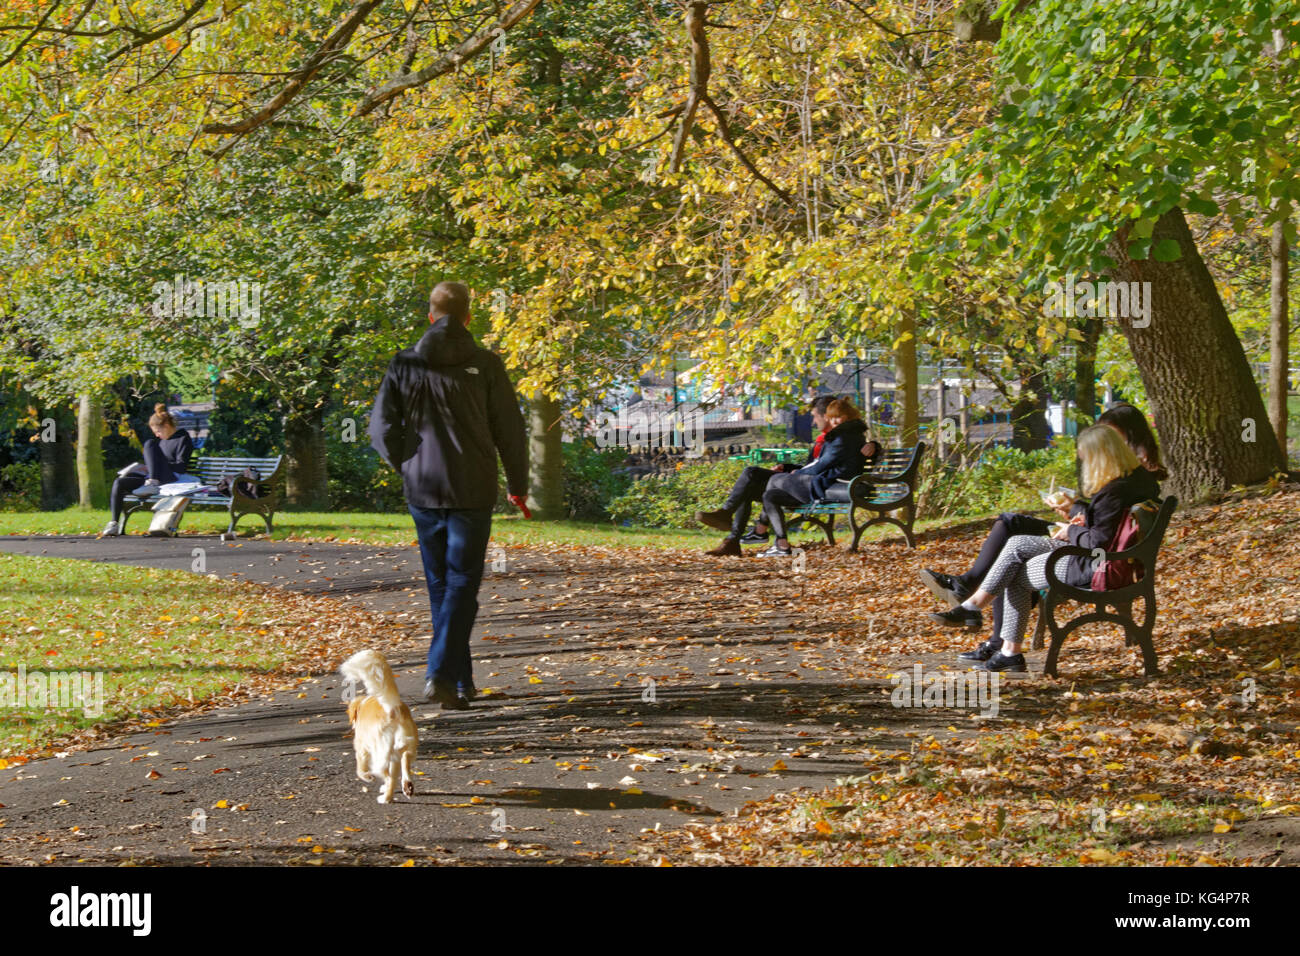 Dog walker in kelvingrove park giornata soleggiata con foglie di autunno seduta sul banco di lavoro con le persone in background visto da dietro in prospettiva Foto Stock